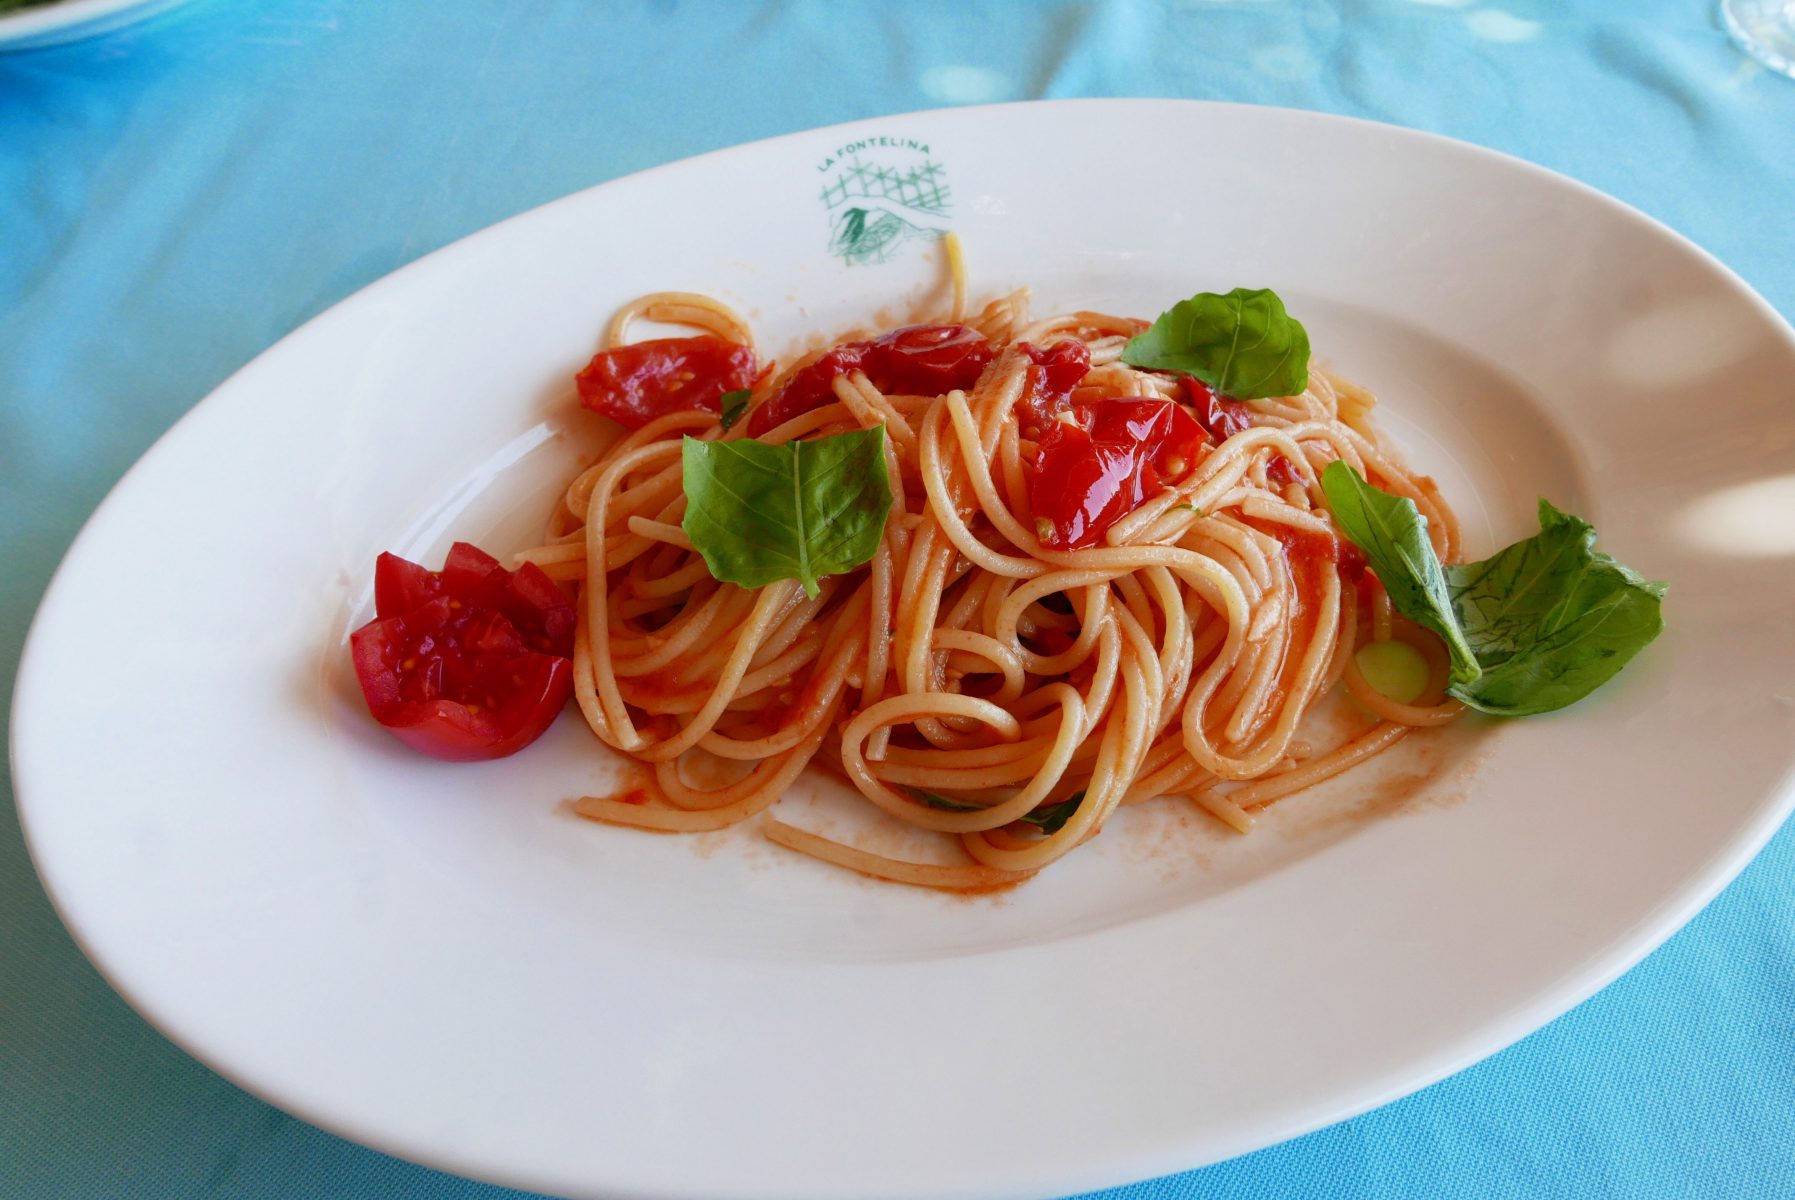 Spaghetti al pomodoro at La Fontelina, Capri.